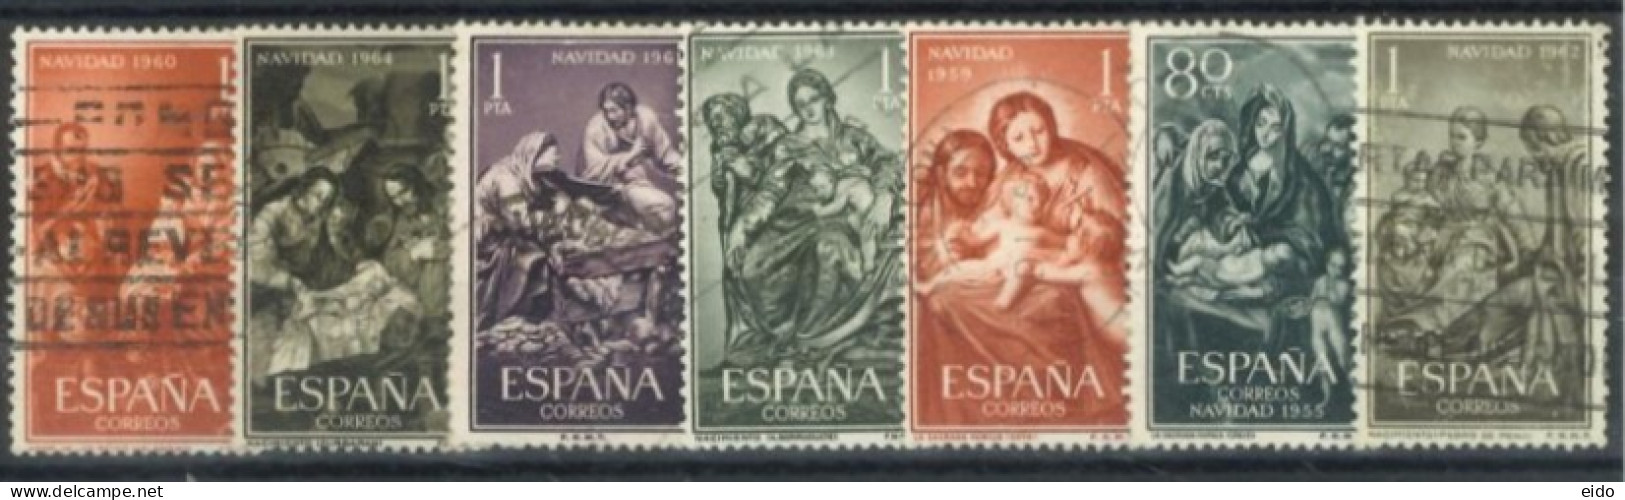 SPAIN, 1955/63, VIRGINS STAMPS SET OF 7, USED. - Oblitérés